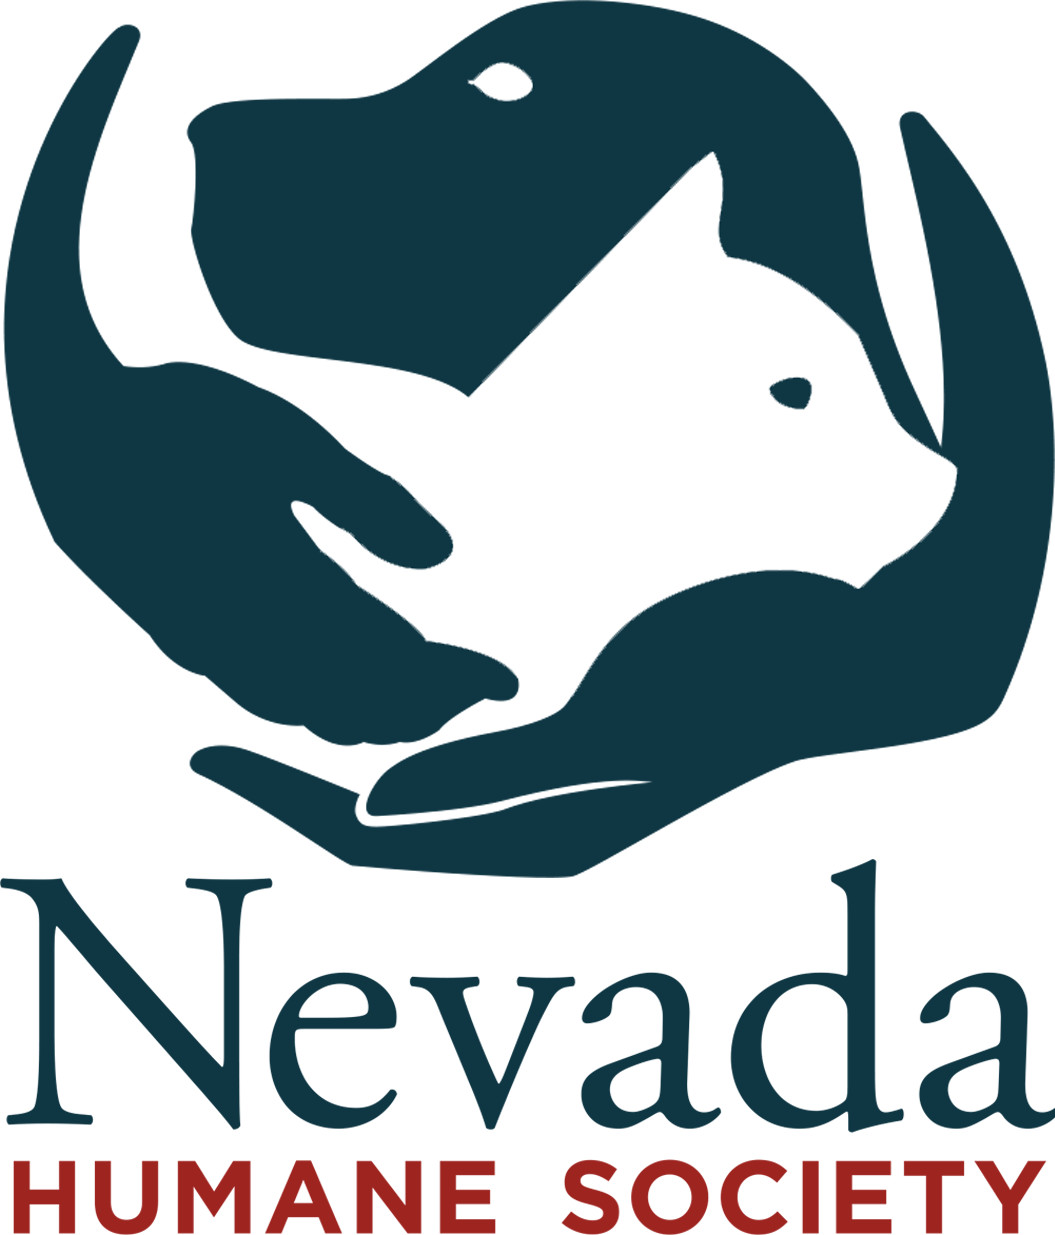 Día de Servicio - Ayuda a nuestros amigos peludos en la Sociedad Protectora de Animales de Nevada